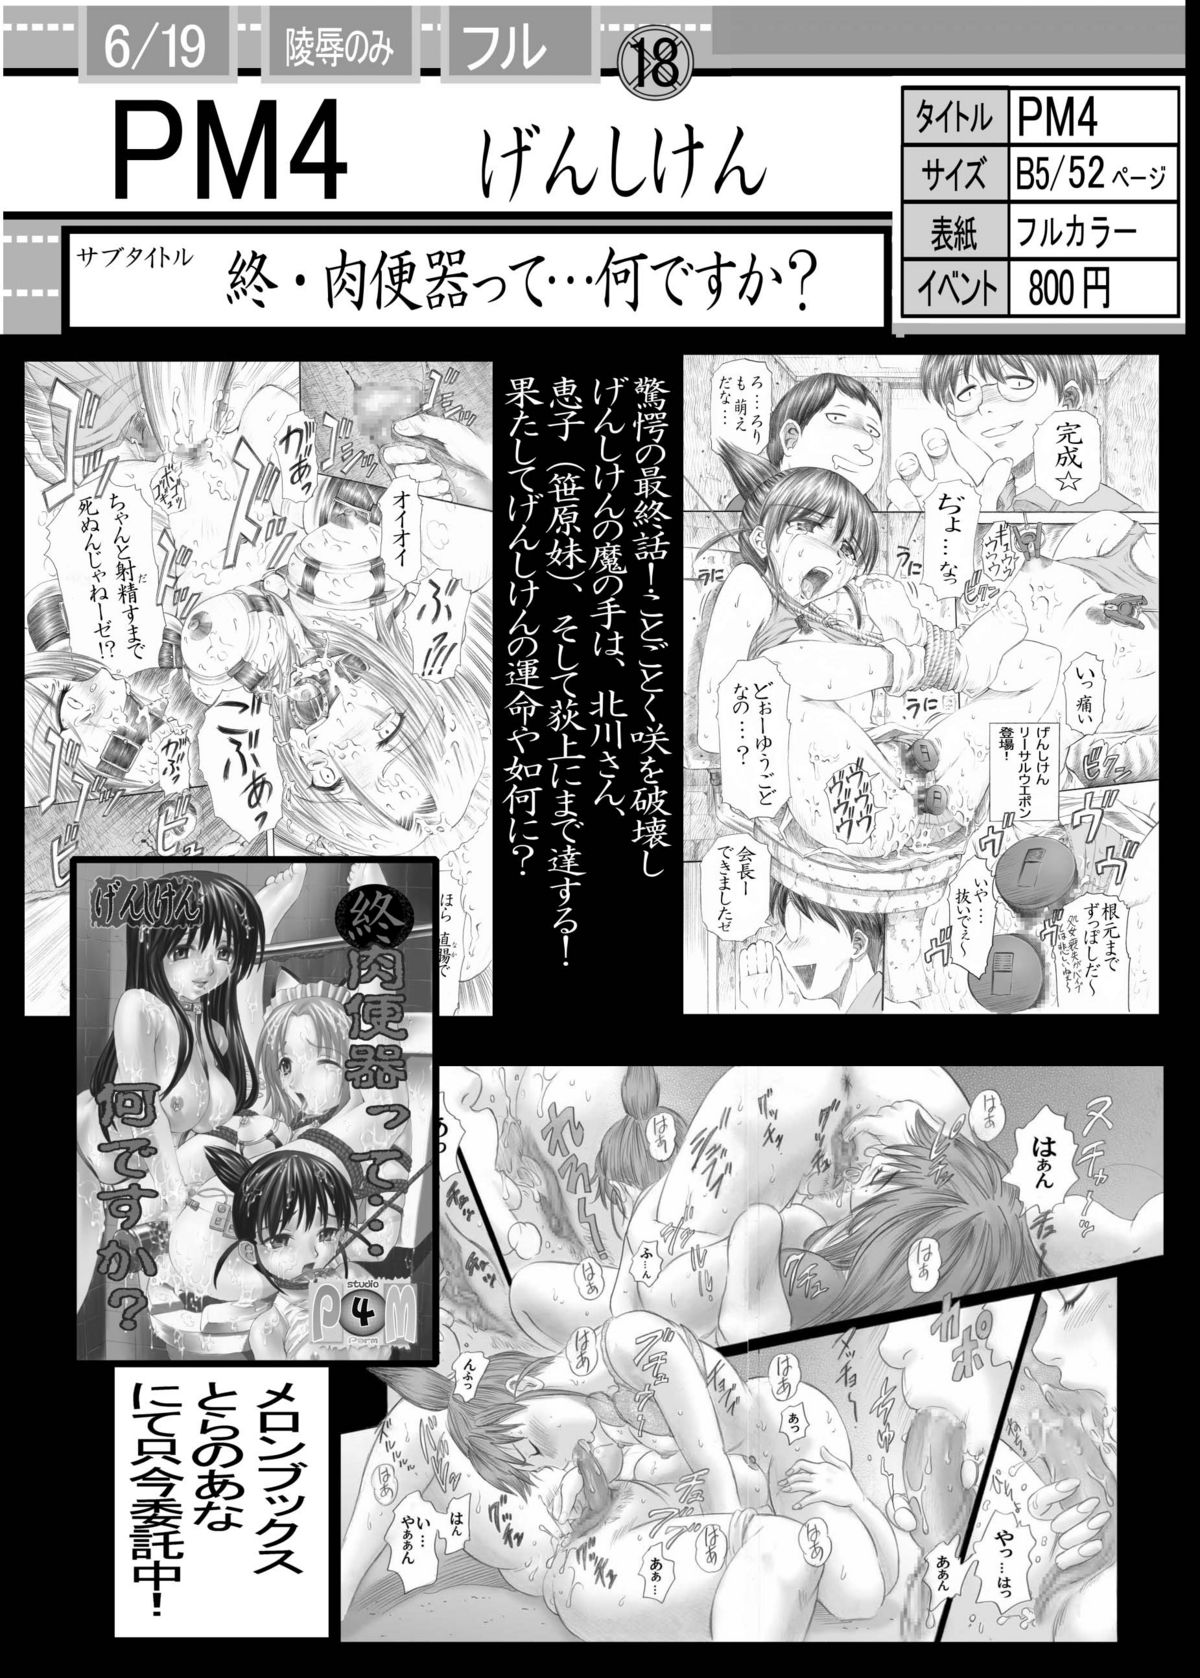 [Studio★ParM (Fujiwara Noriwo, Kotobuki Utage, Tanaka Naburo)] PM06 Ichigo Gari (Ichigo 100%) [Digital] page 47 full